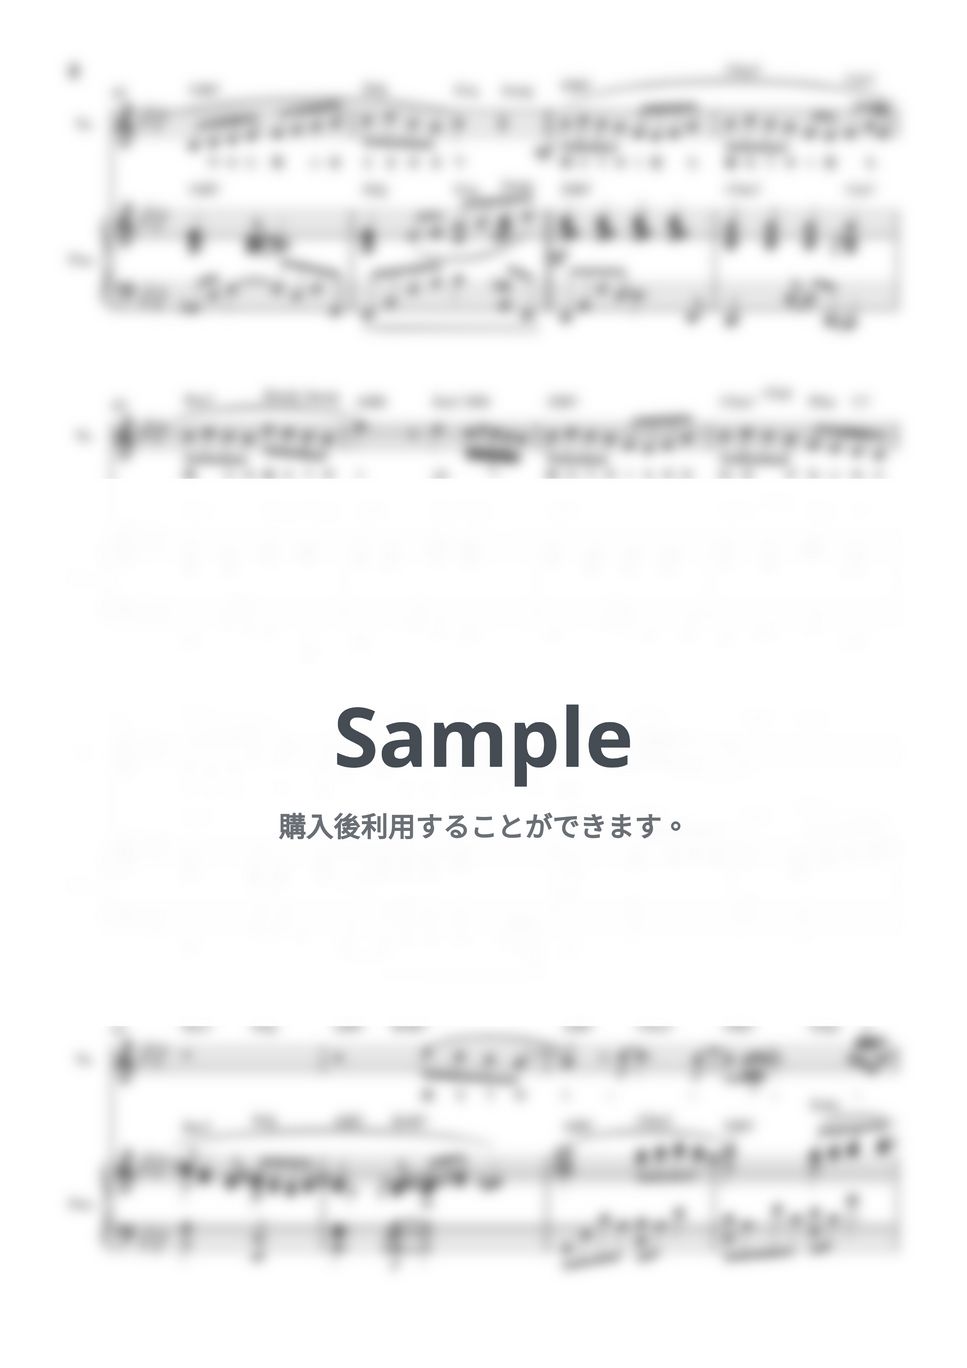 藤井風 - 満ちてゆく♭1キー弾き語り(piano&vocal楽譜) by KEIKO EBI